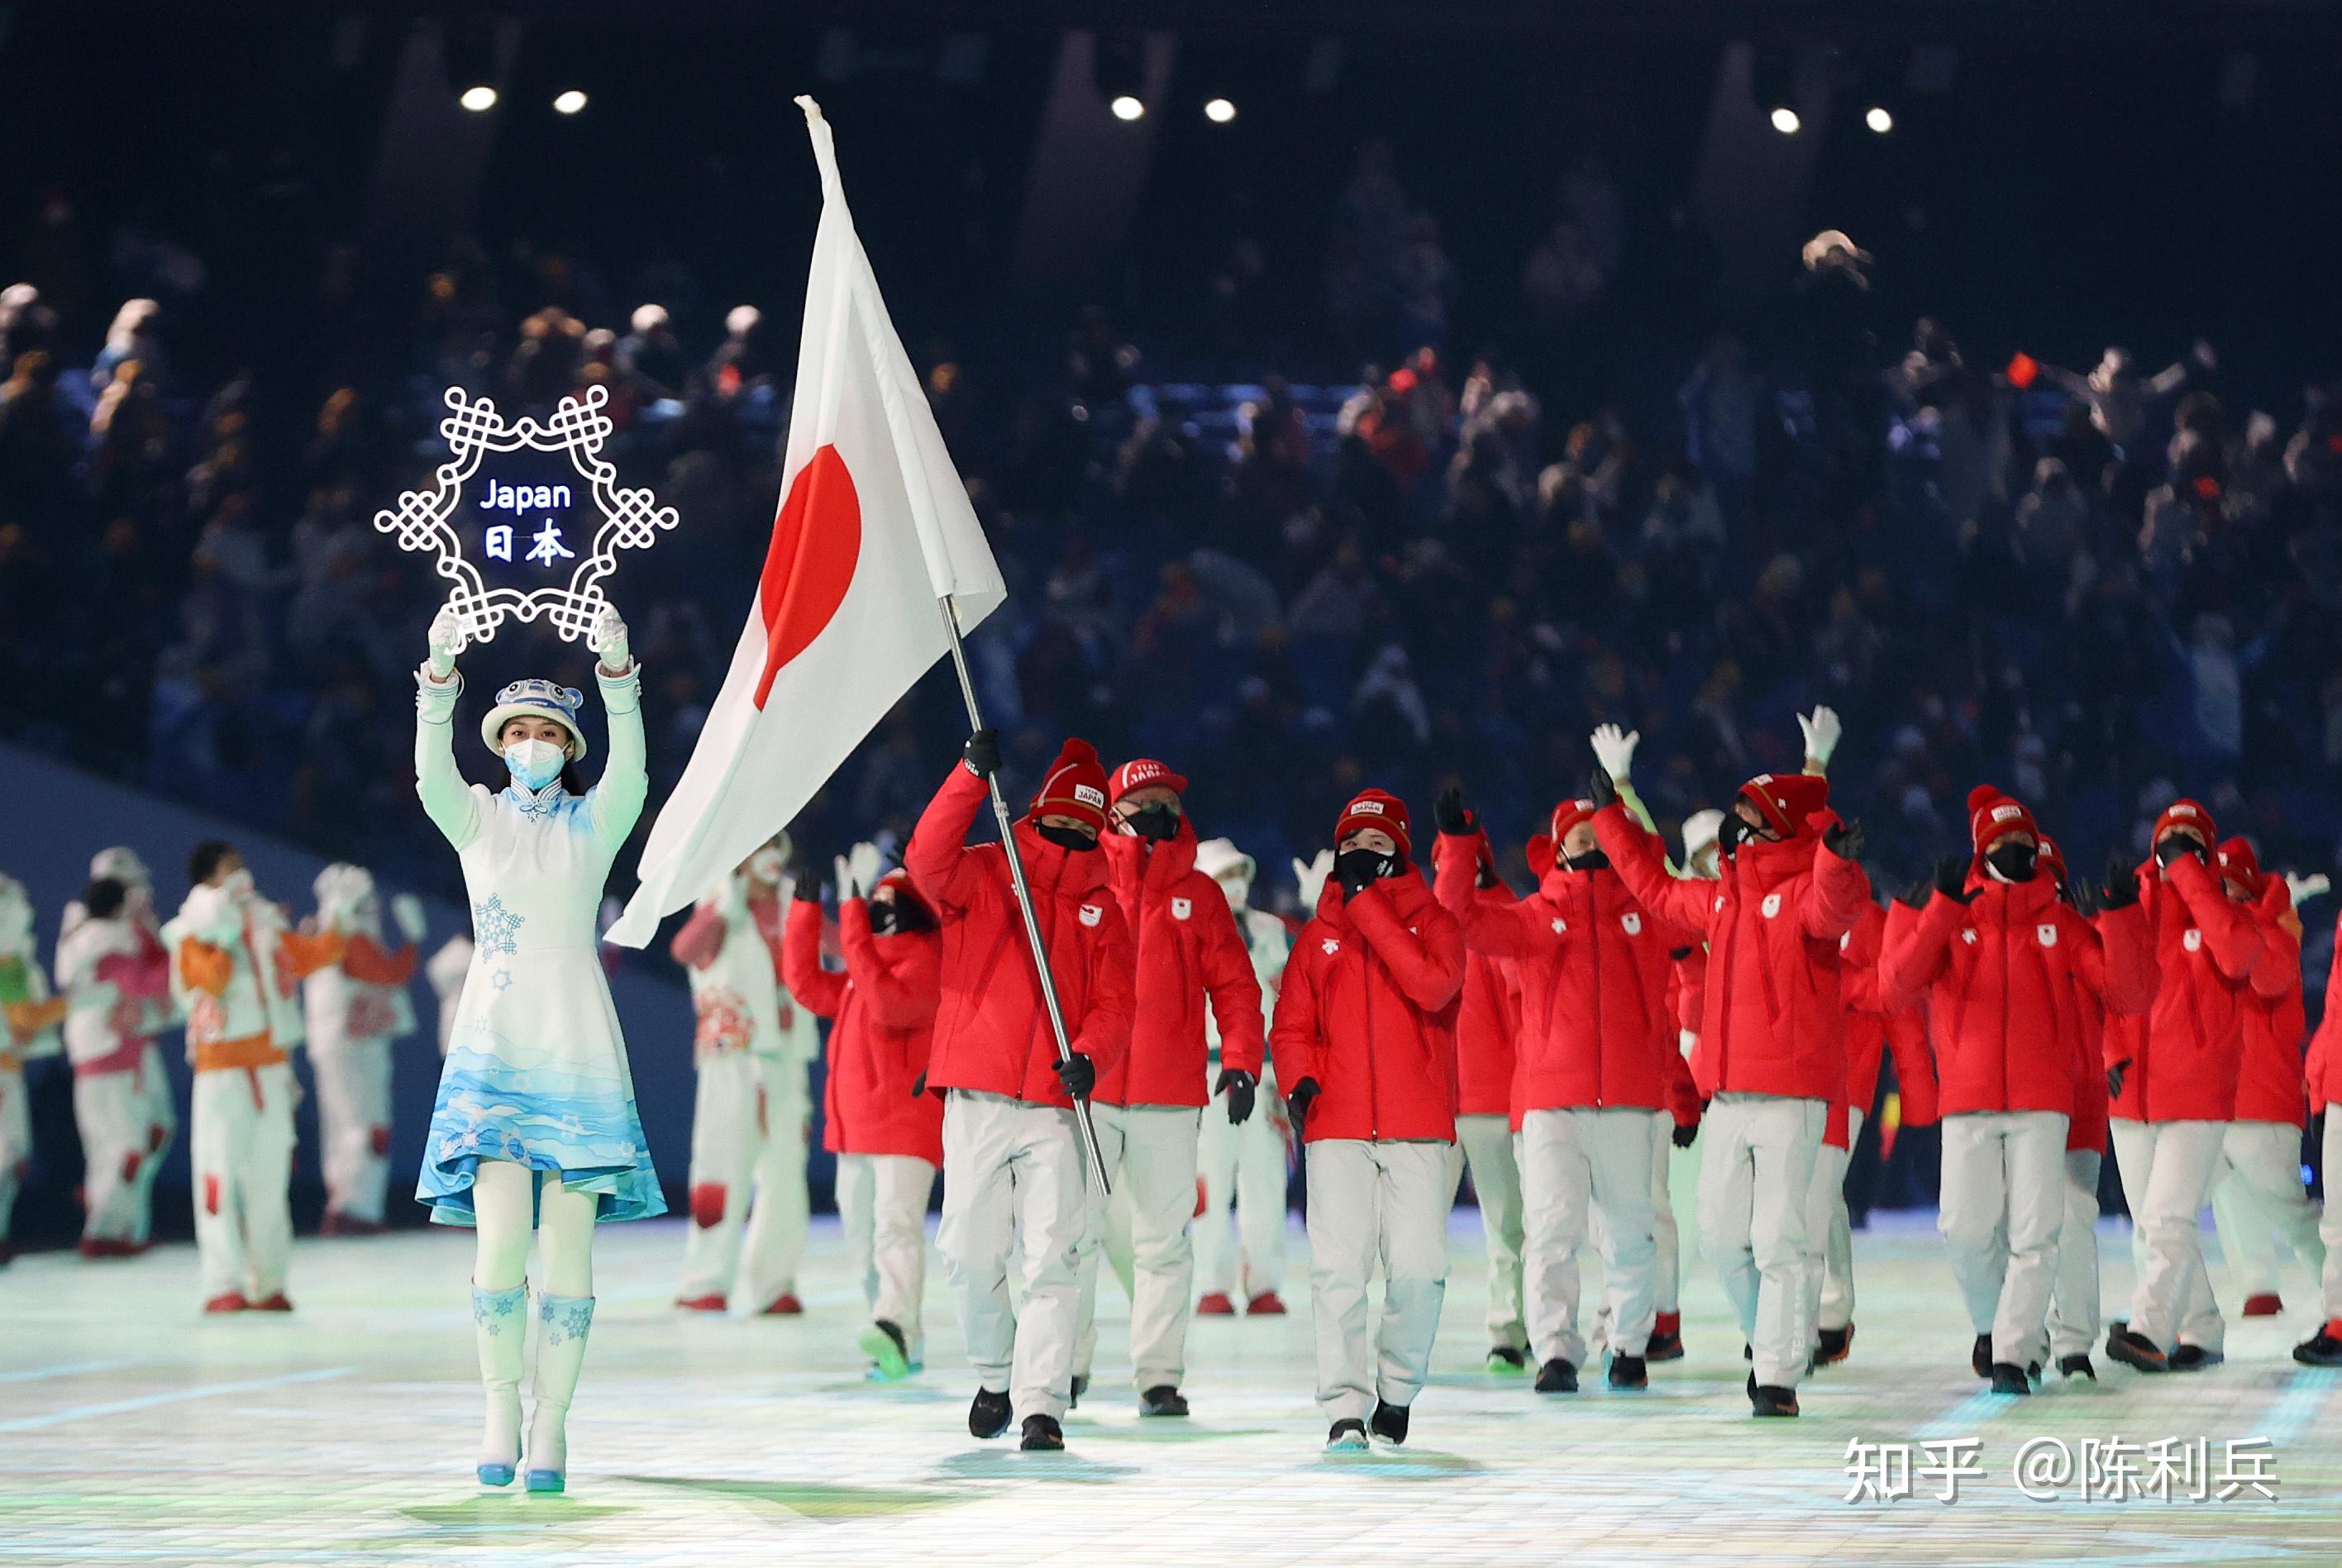 北京冬奥会运动员入场时,前边礼仪举的雪花牌子是透明发光的,那电池在